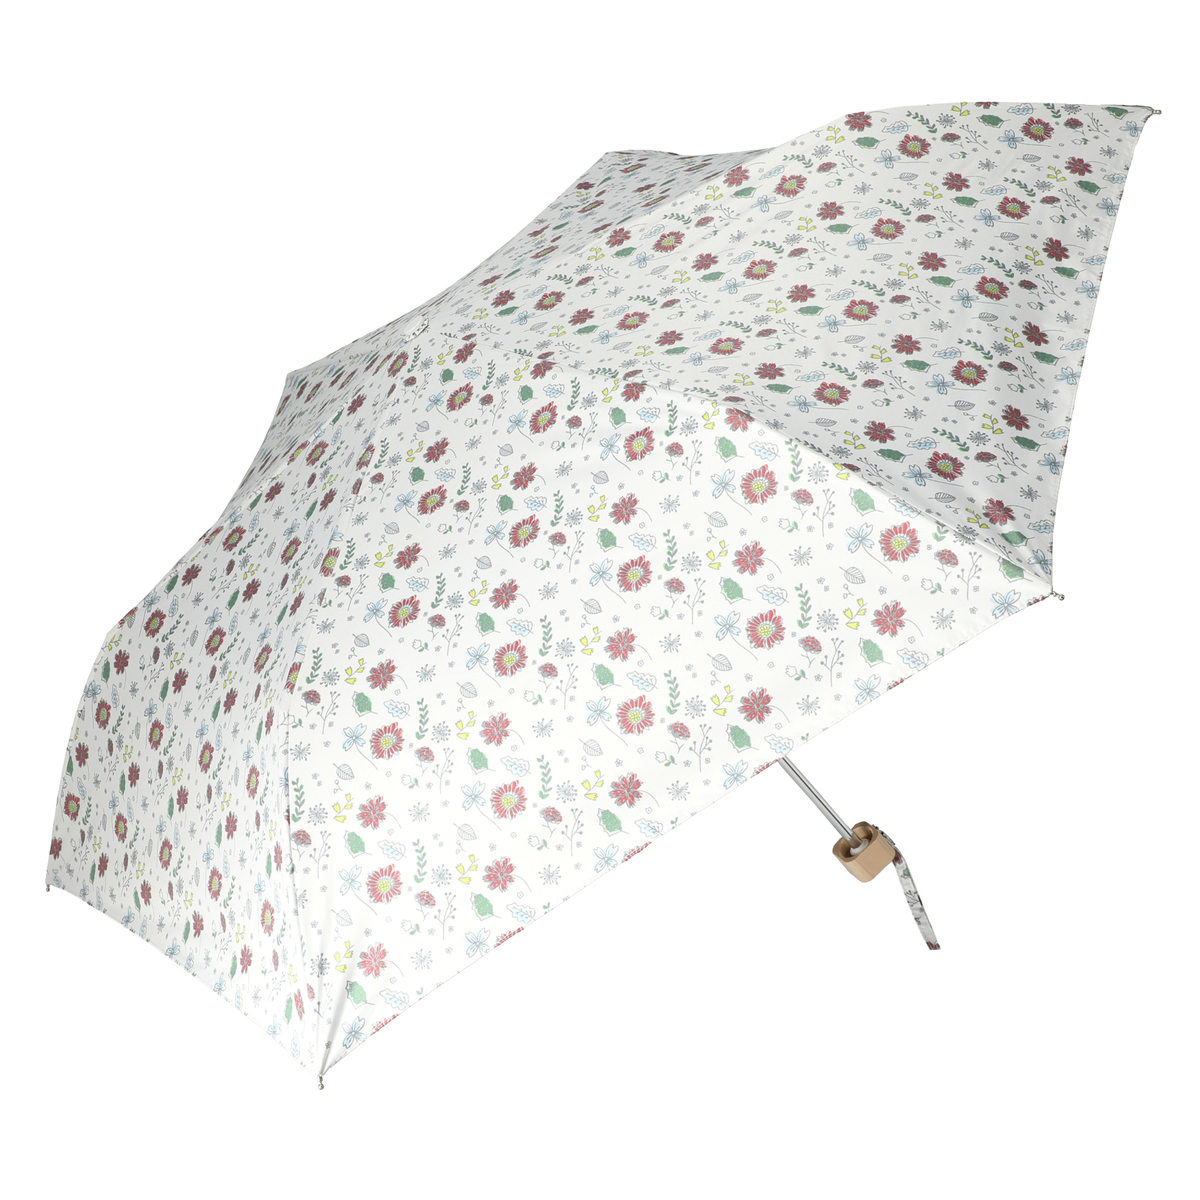  ルナジュメール UV+1級遮光+晴雨兼用 プリント 折傘  小花柄オフホワイト